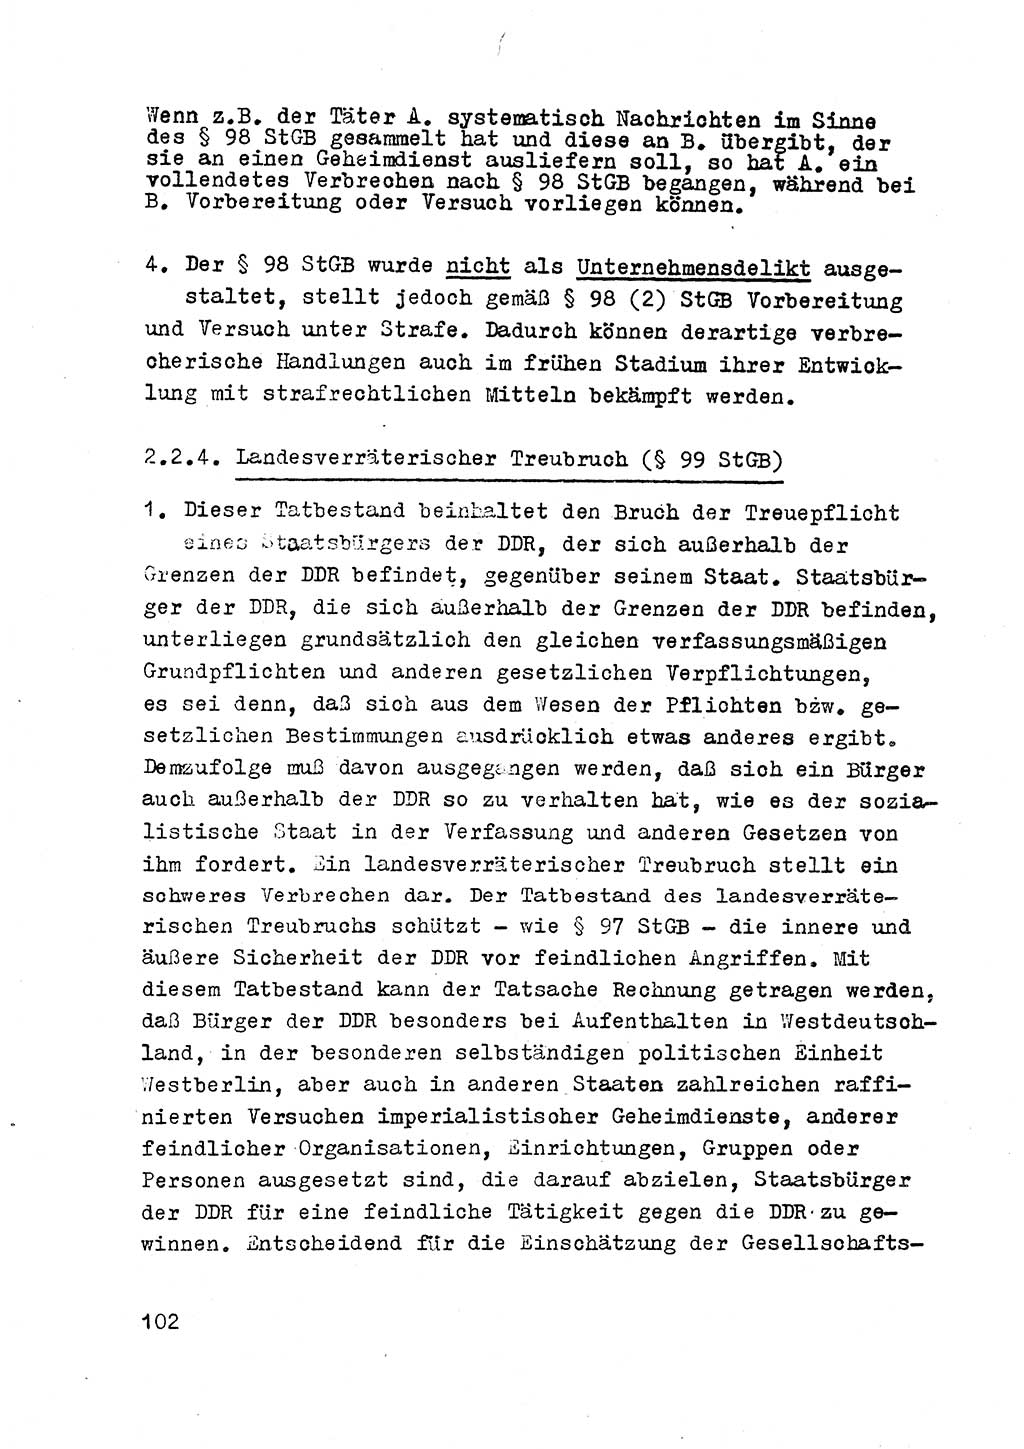 Strafrecht der DDR (Deutsche Demokratische Republik), Besonderer Teil, Lehrmaterial, Heft 2 1969, Seite 102 (Strafr. DDR BT Lehrmat. H. 2 1969, S. 102)